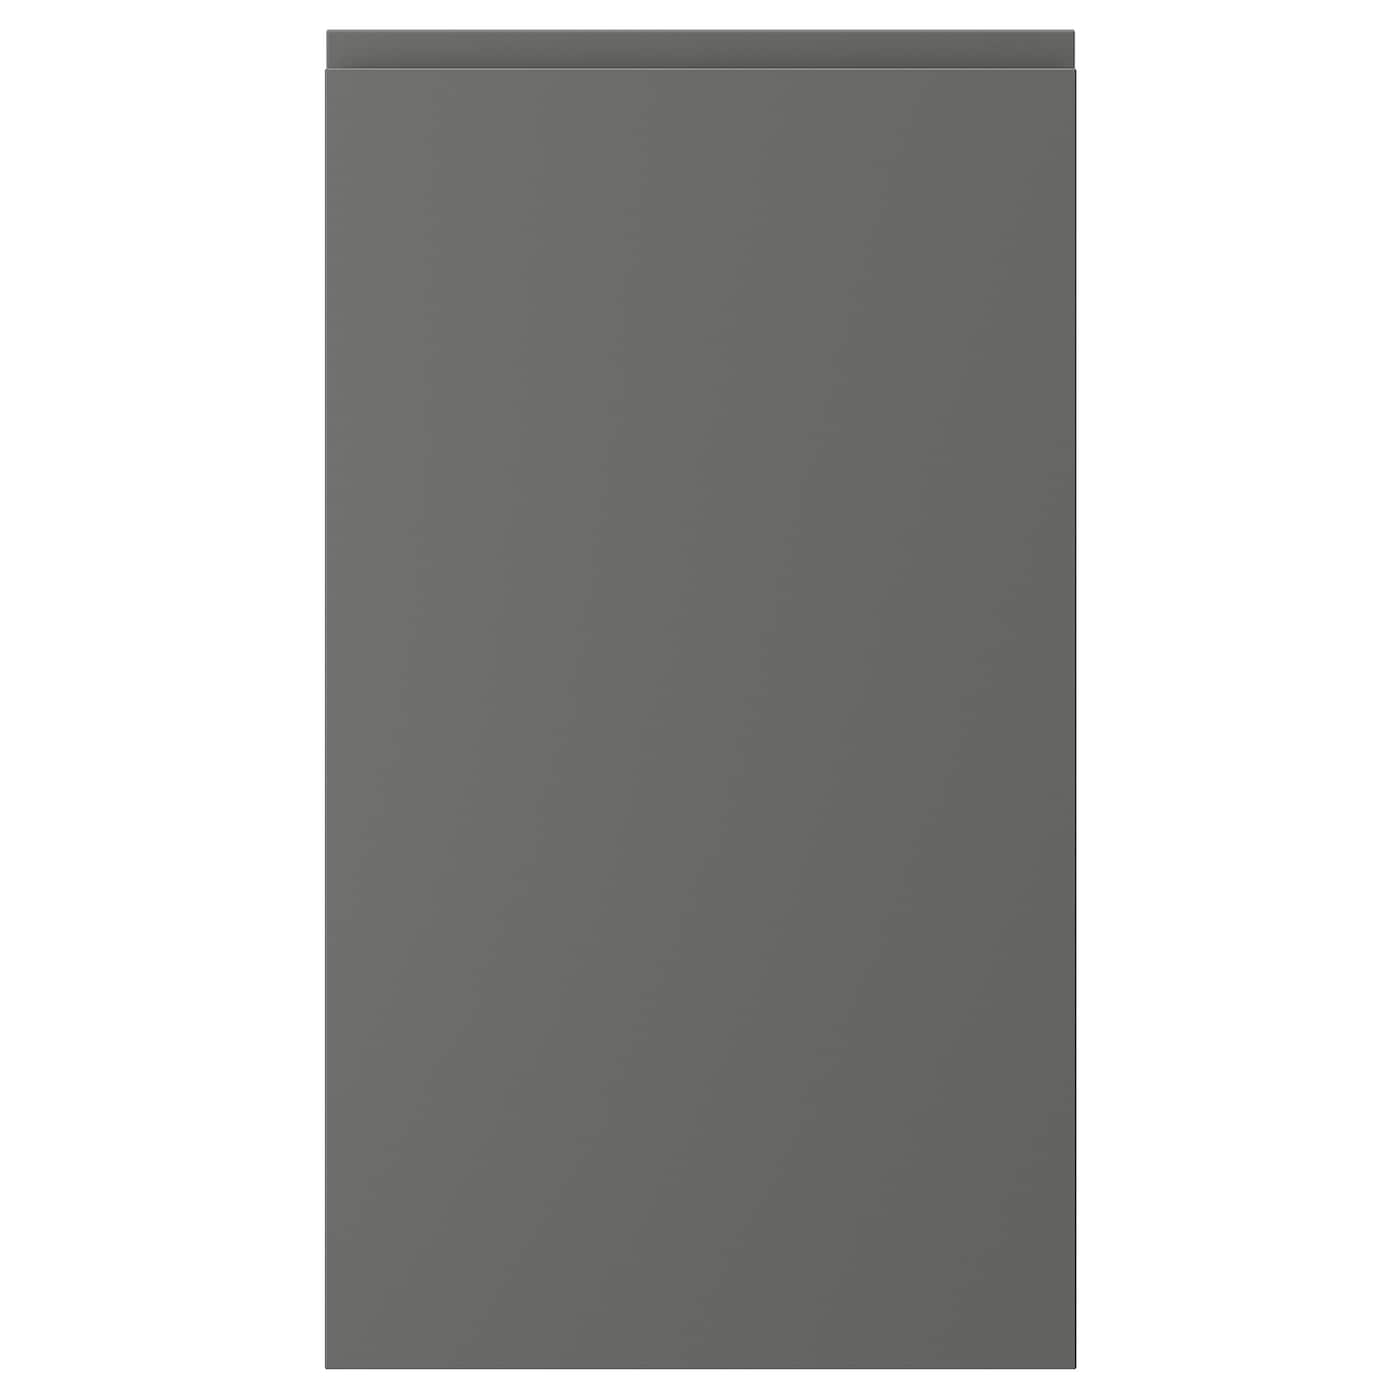 Фасад для посудомоечной машины - IKEA VOXTORP, 80х45 см, темно-серый, ВОКСТОРП ИКЕА